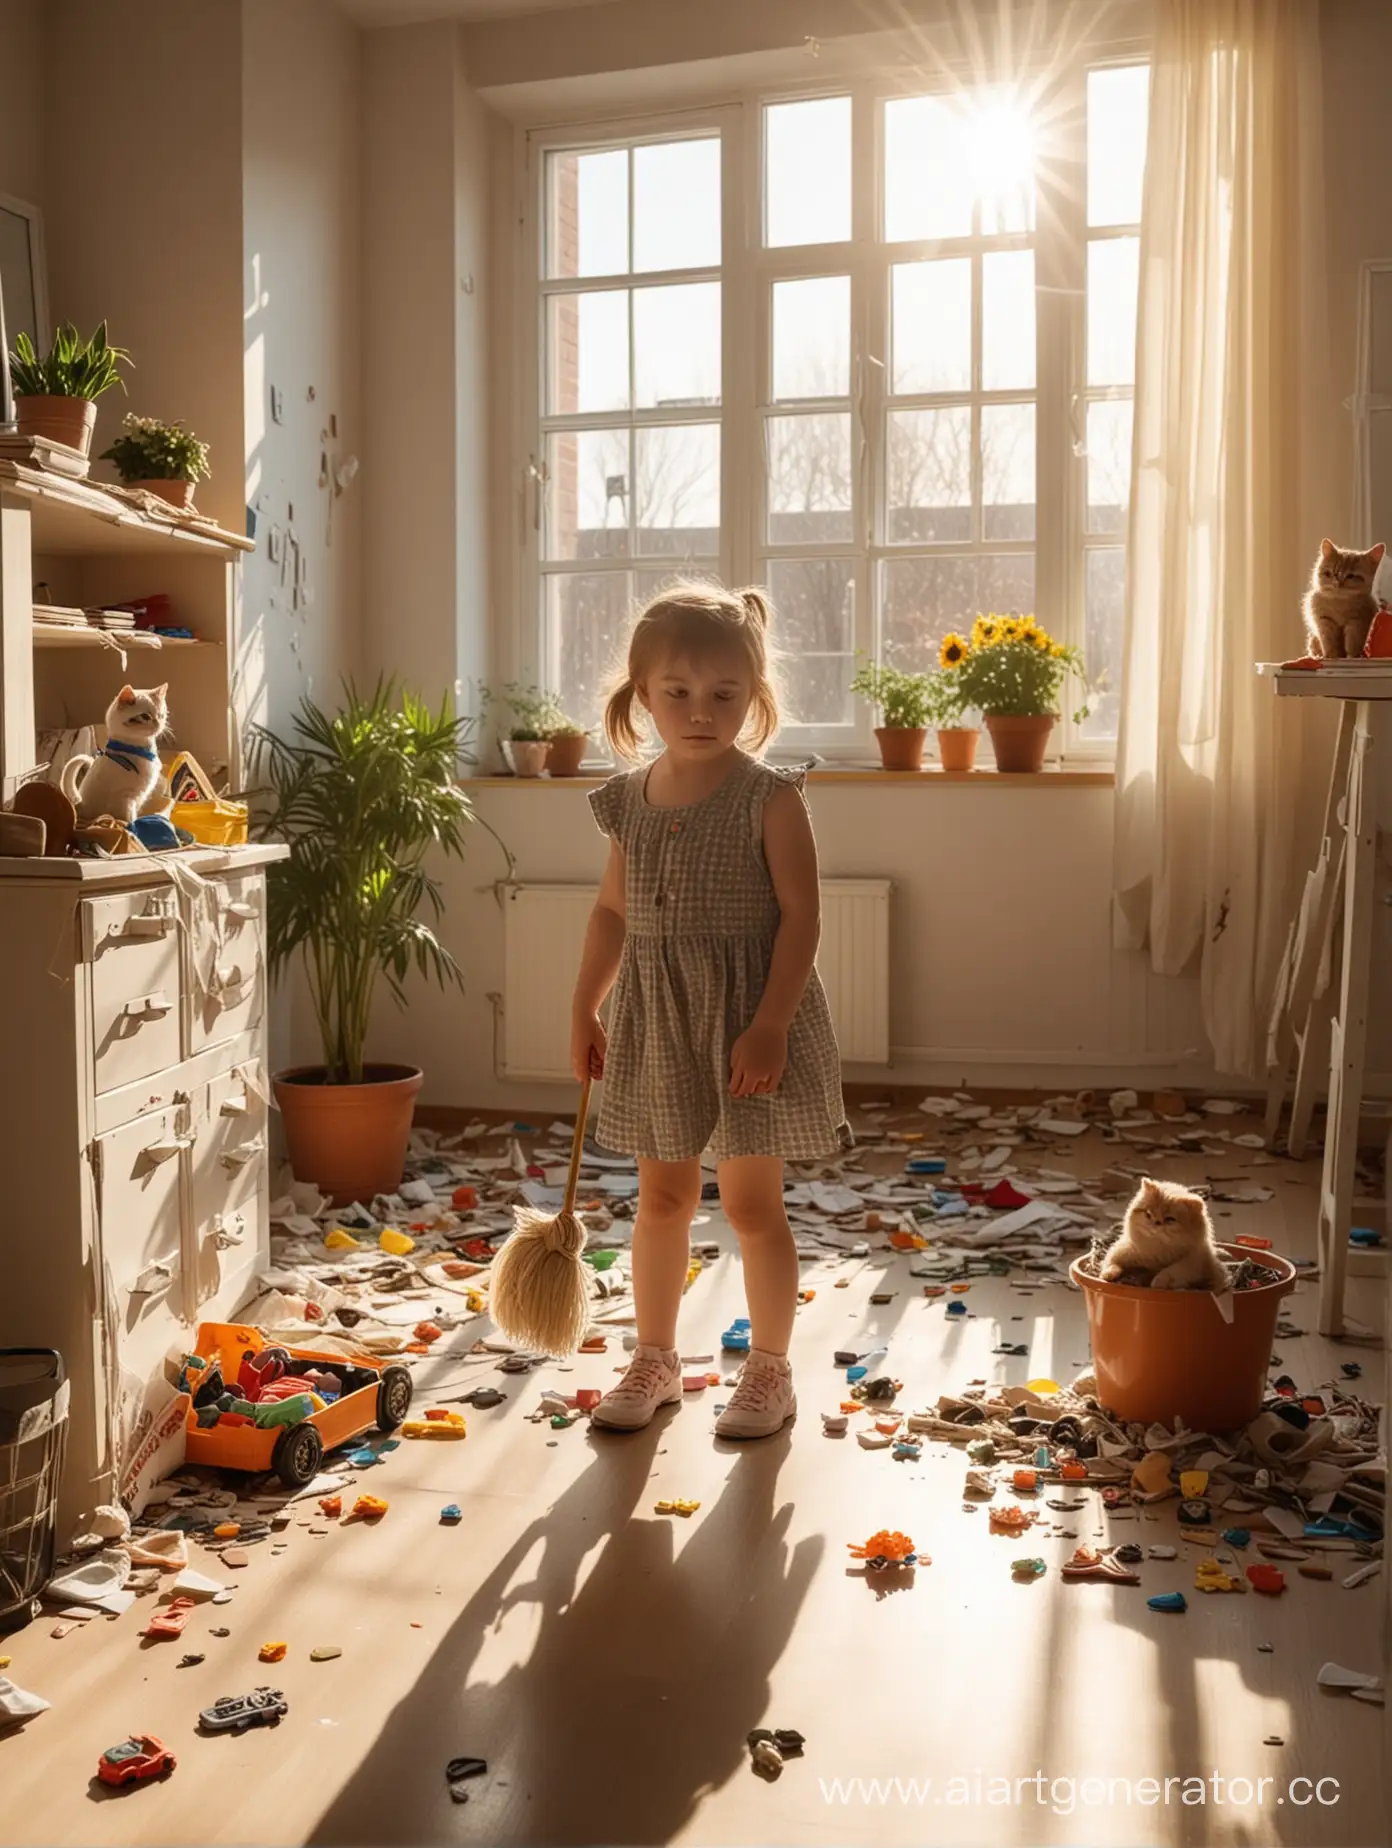 Девушка стоит в зале со шваброй в захламленной комнате с растерянным видом не понимая за что браться. Вокруг фантики, детские игрушки, перевернутый цветок от кота и следы по полу. А за окном замечательно светит  солнышко.